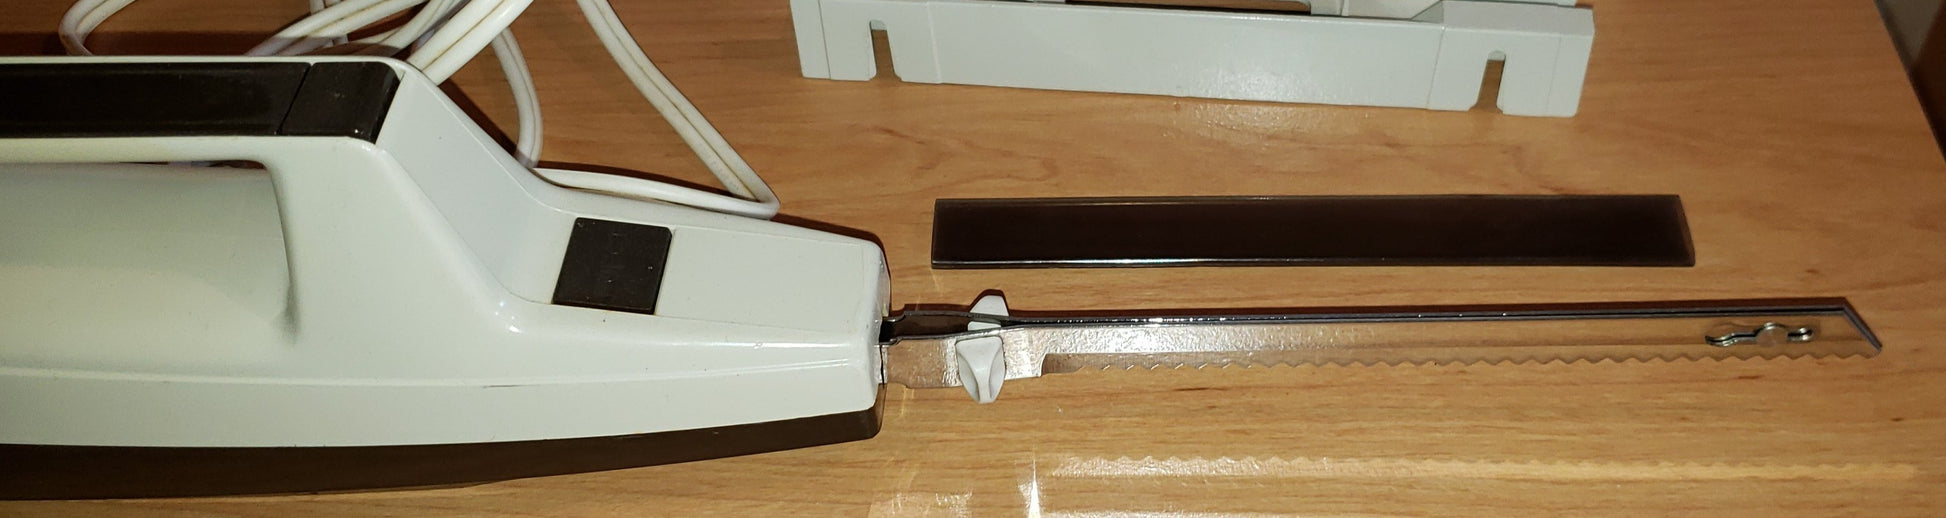 Troc Couteau électrique Moulinex vintage qui fonctionne